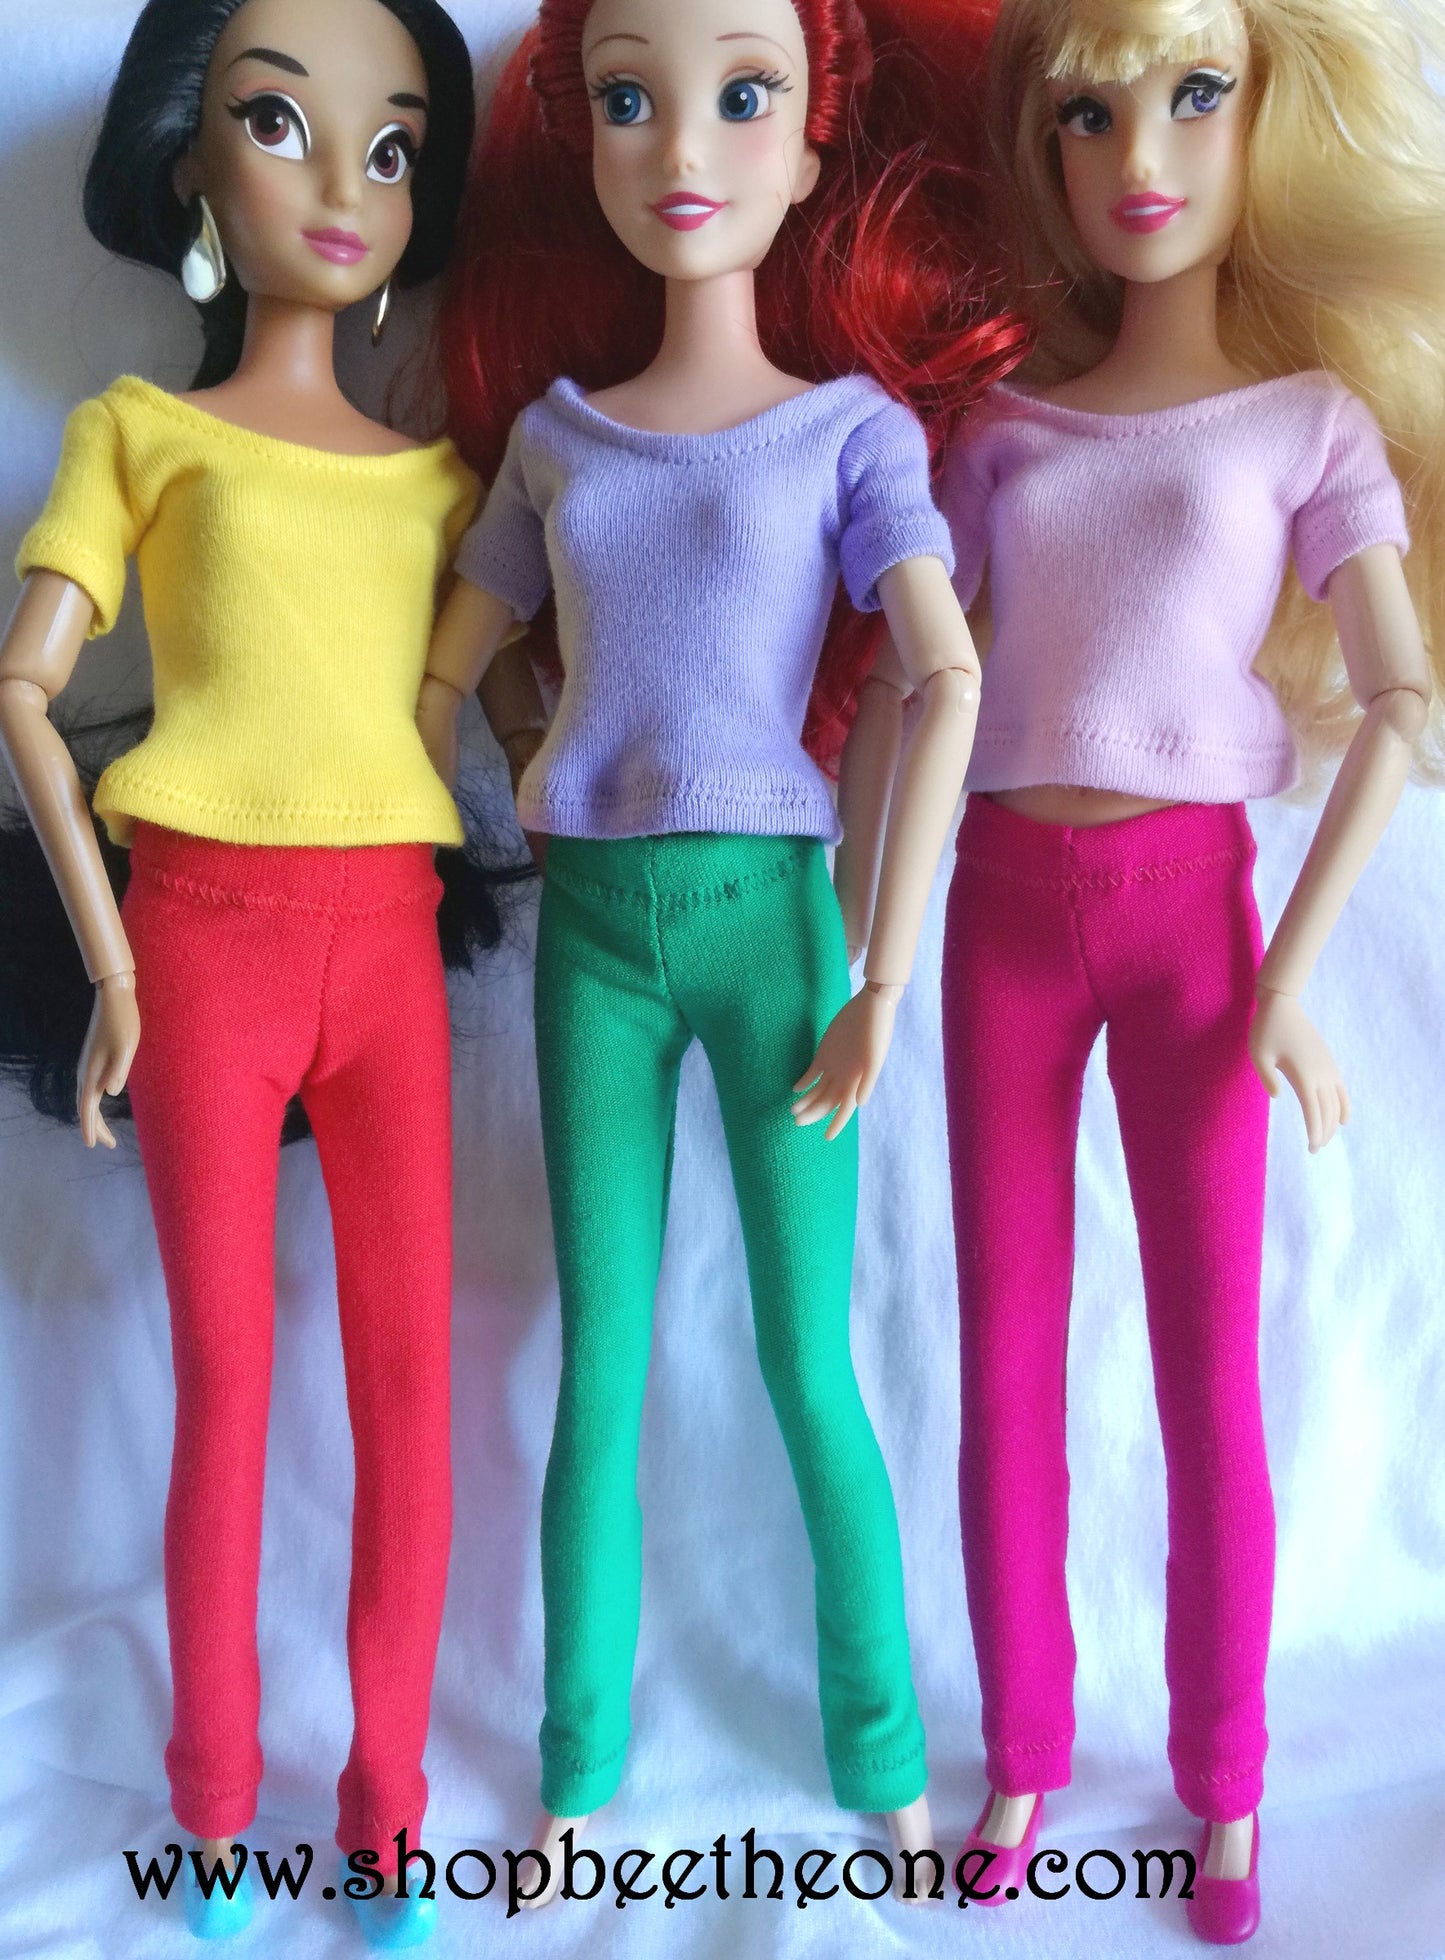 Pantalon collant leggings long pour poupées Disney Princesses (Store et Hasbro) - 5 coloris - Collection Basics - par Bee the One